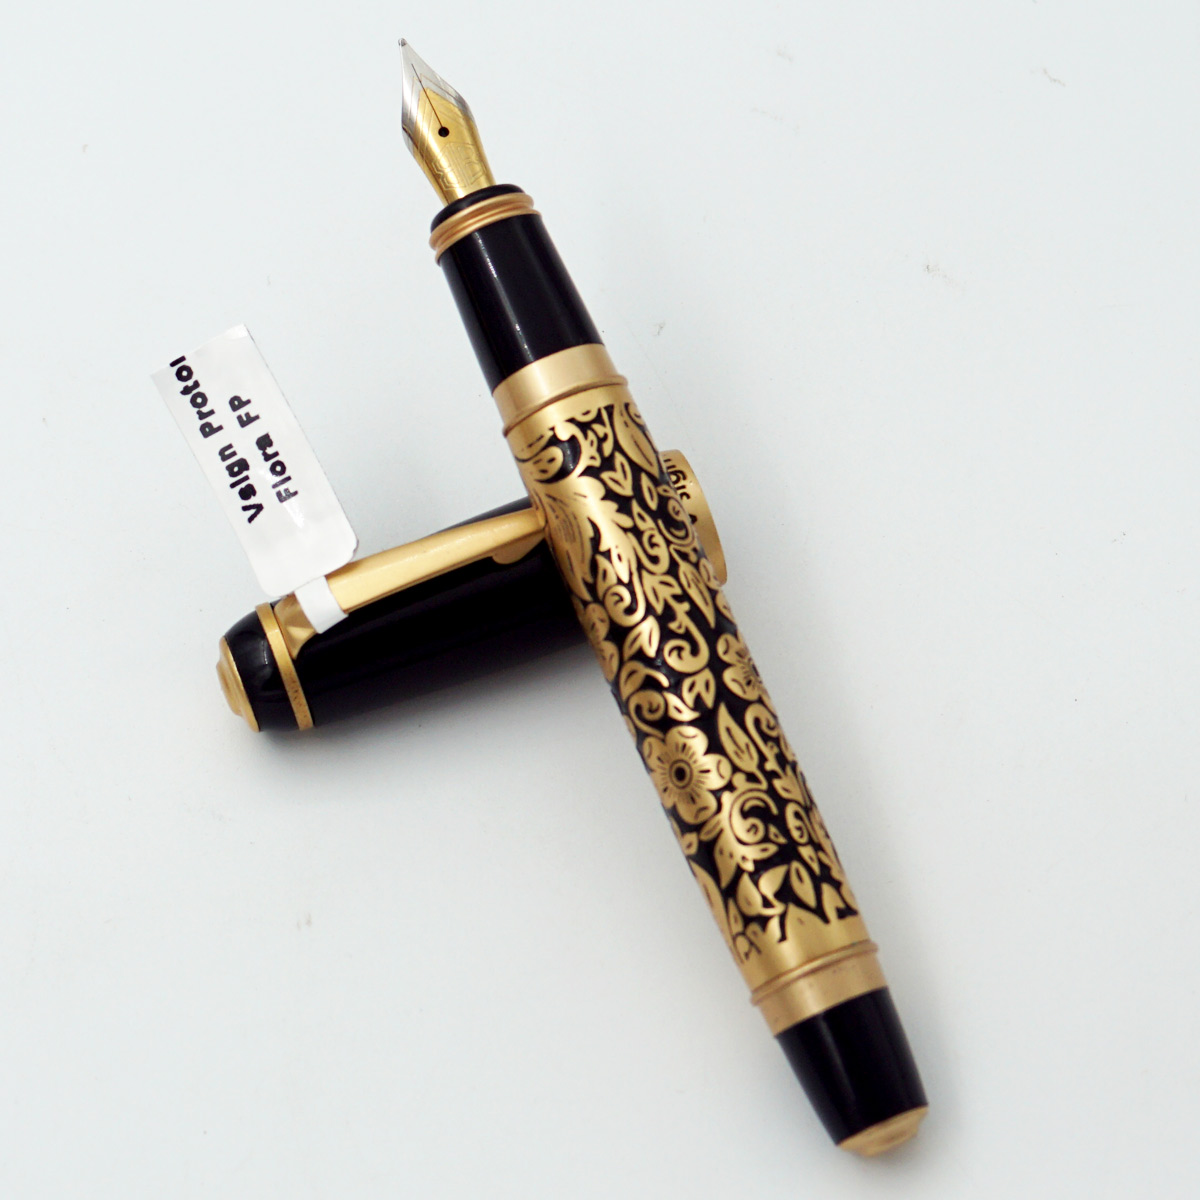 Vsign Proton Flora Golden Color With Flower Design Body And Gold Clip Medium Nib Converter Type Fountain Pen SKU 24443